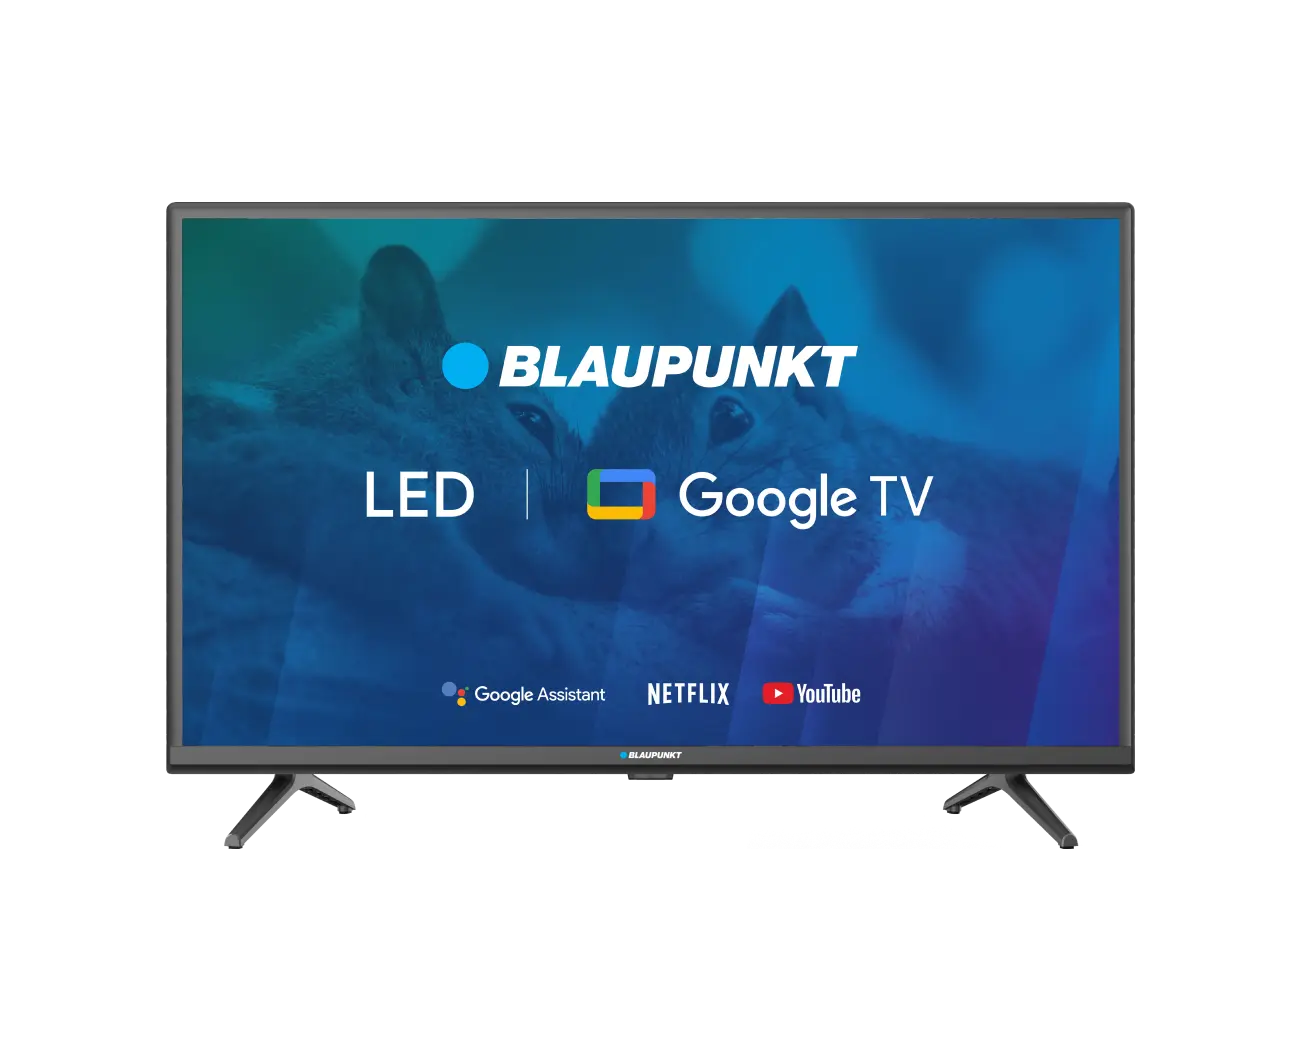 TV HD/FHD Smart TV D-LED Blaupunkt 32HBG5000